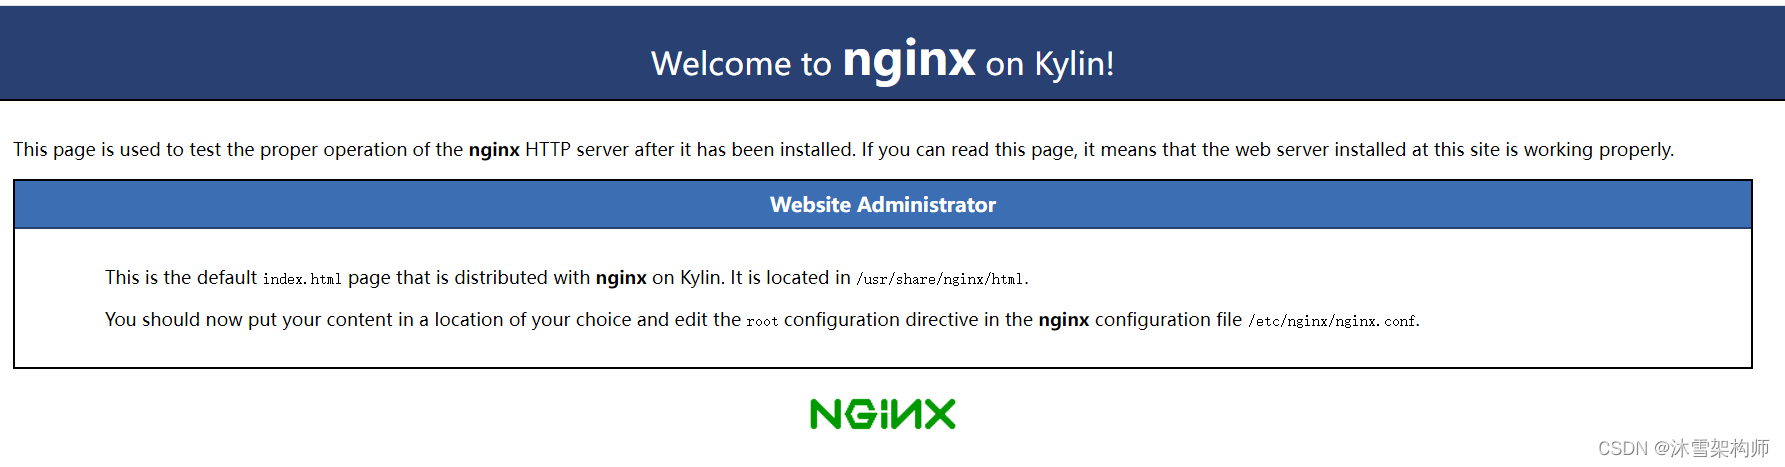 银河麒麟操作系统Kylin Linux 离线安装Nginx1.21.5